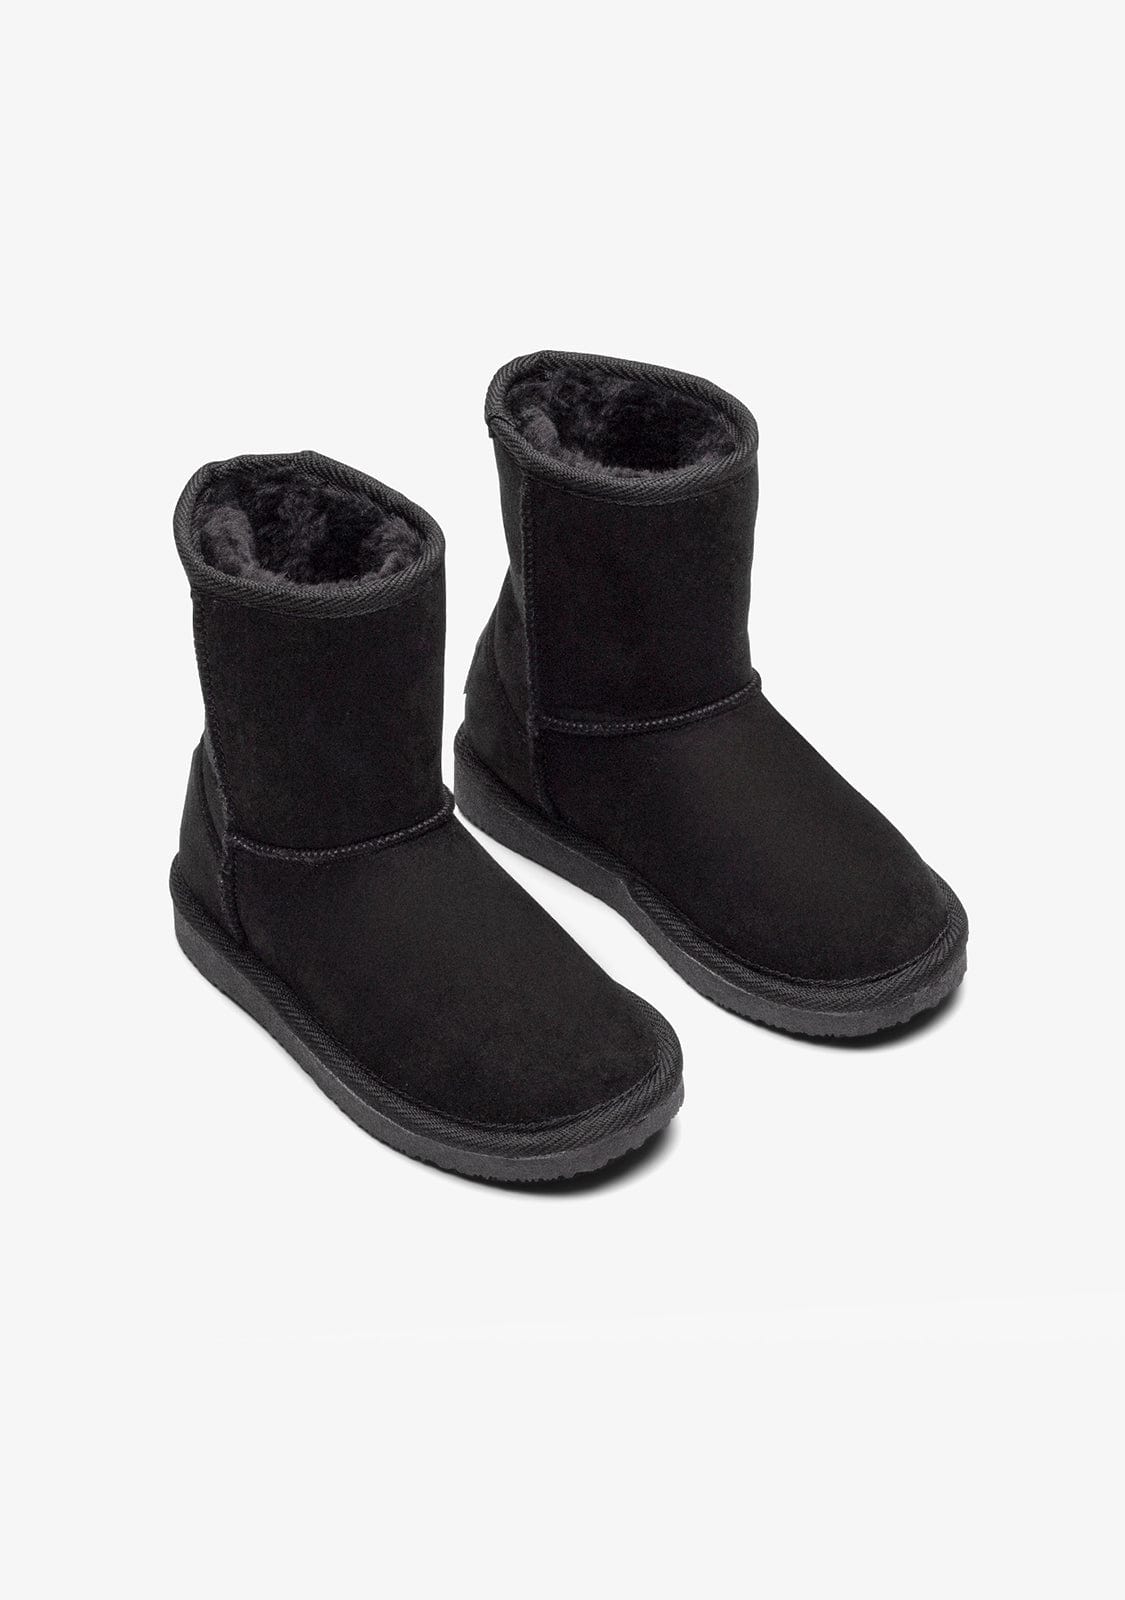 FRESAS CON NATA Shoes Australian Boots Black Water Repellent